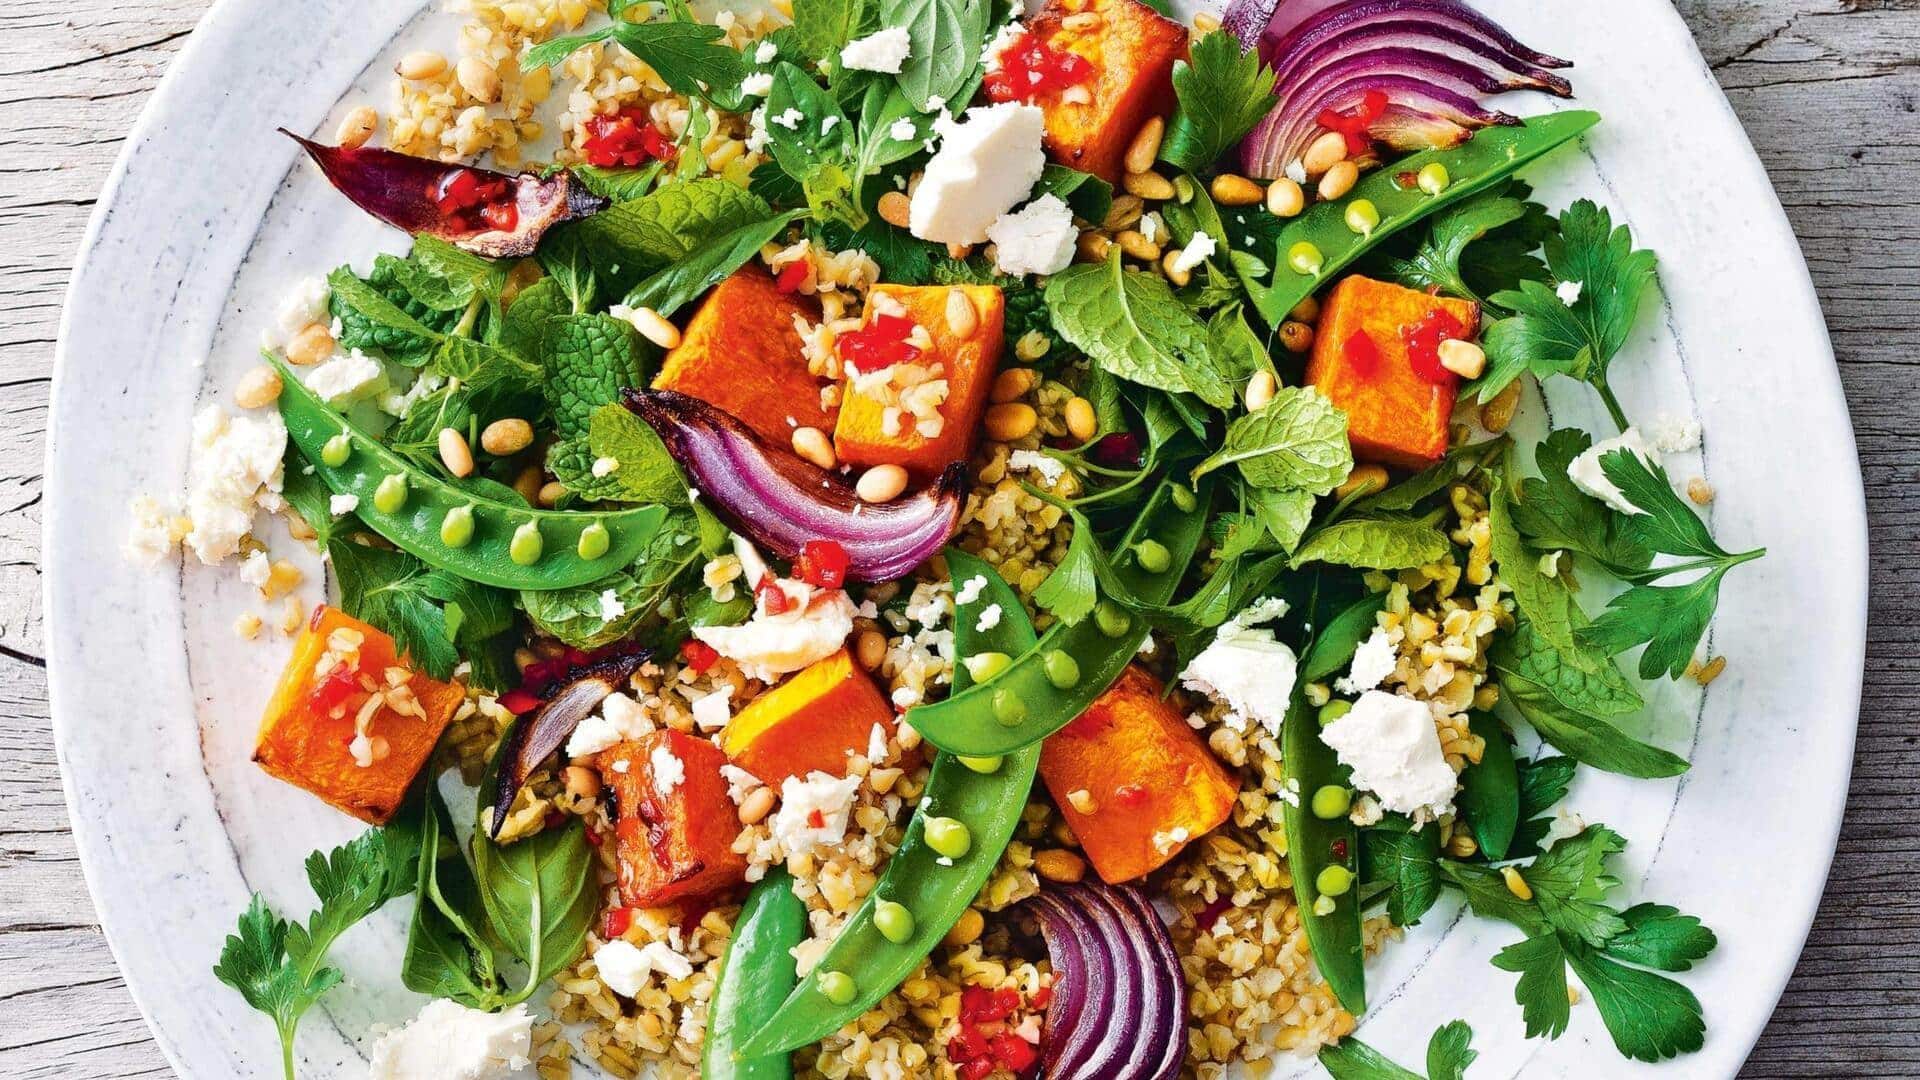 Cobalah resep salad freekeh ini untuk hari yang sehat